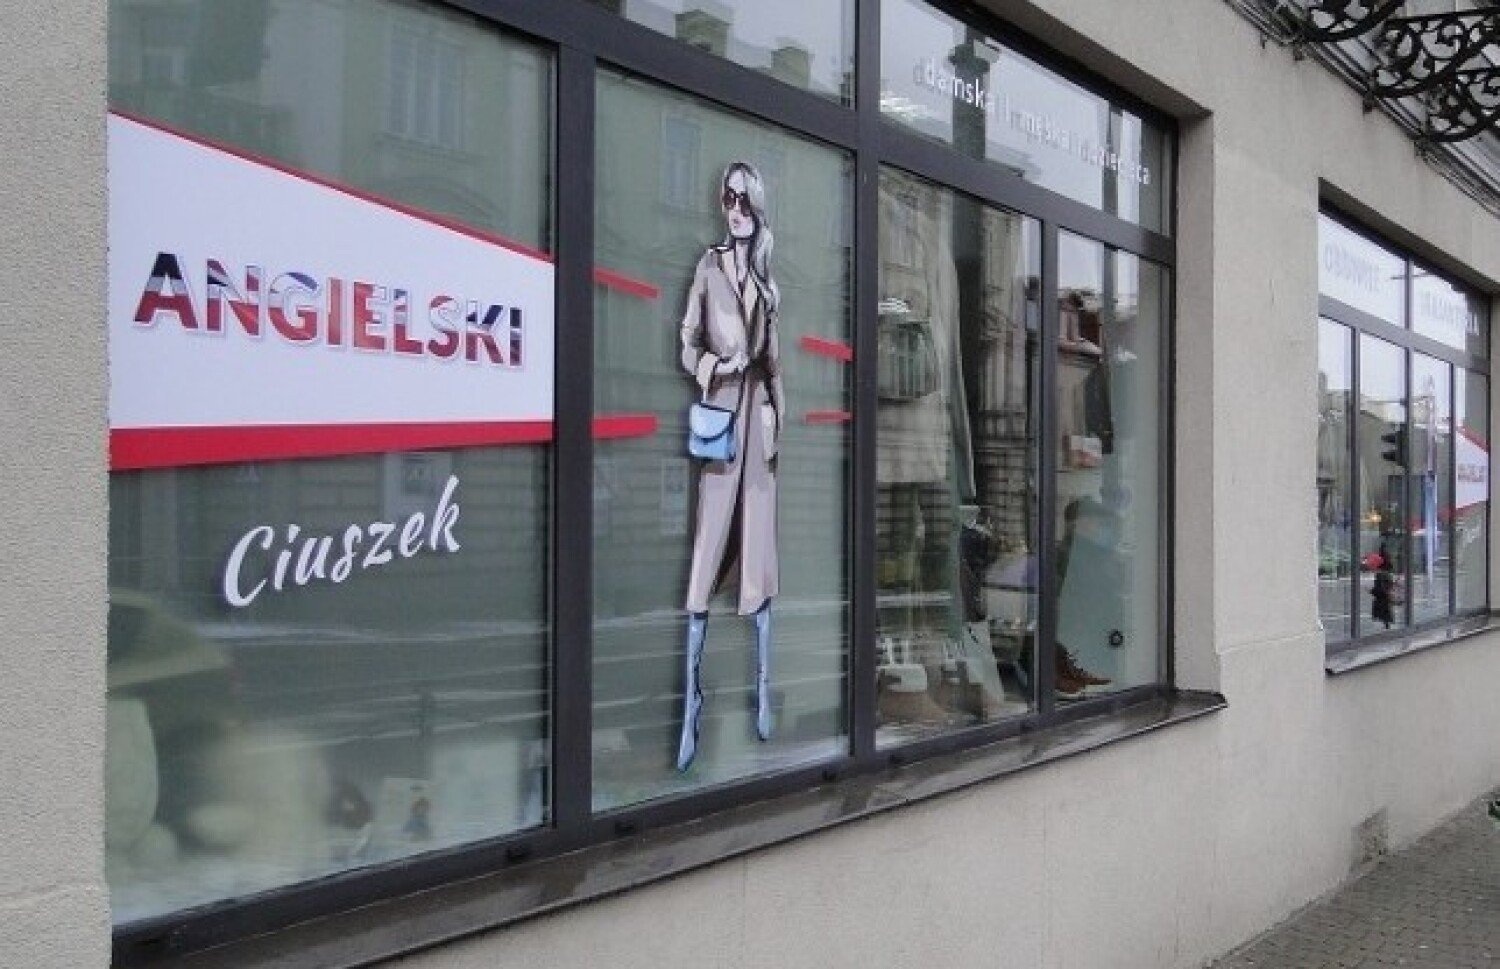 W Radomiu powstanie nowy sklep z odzieżą używaną Angielski ciuszek. Znamy  termin otwarcia | Radom Nasze Miasto